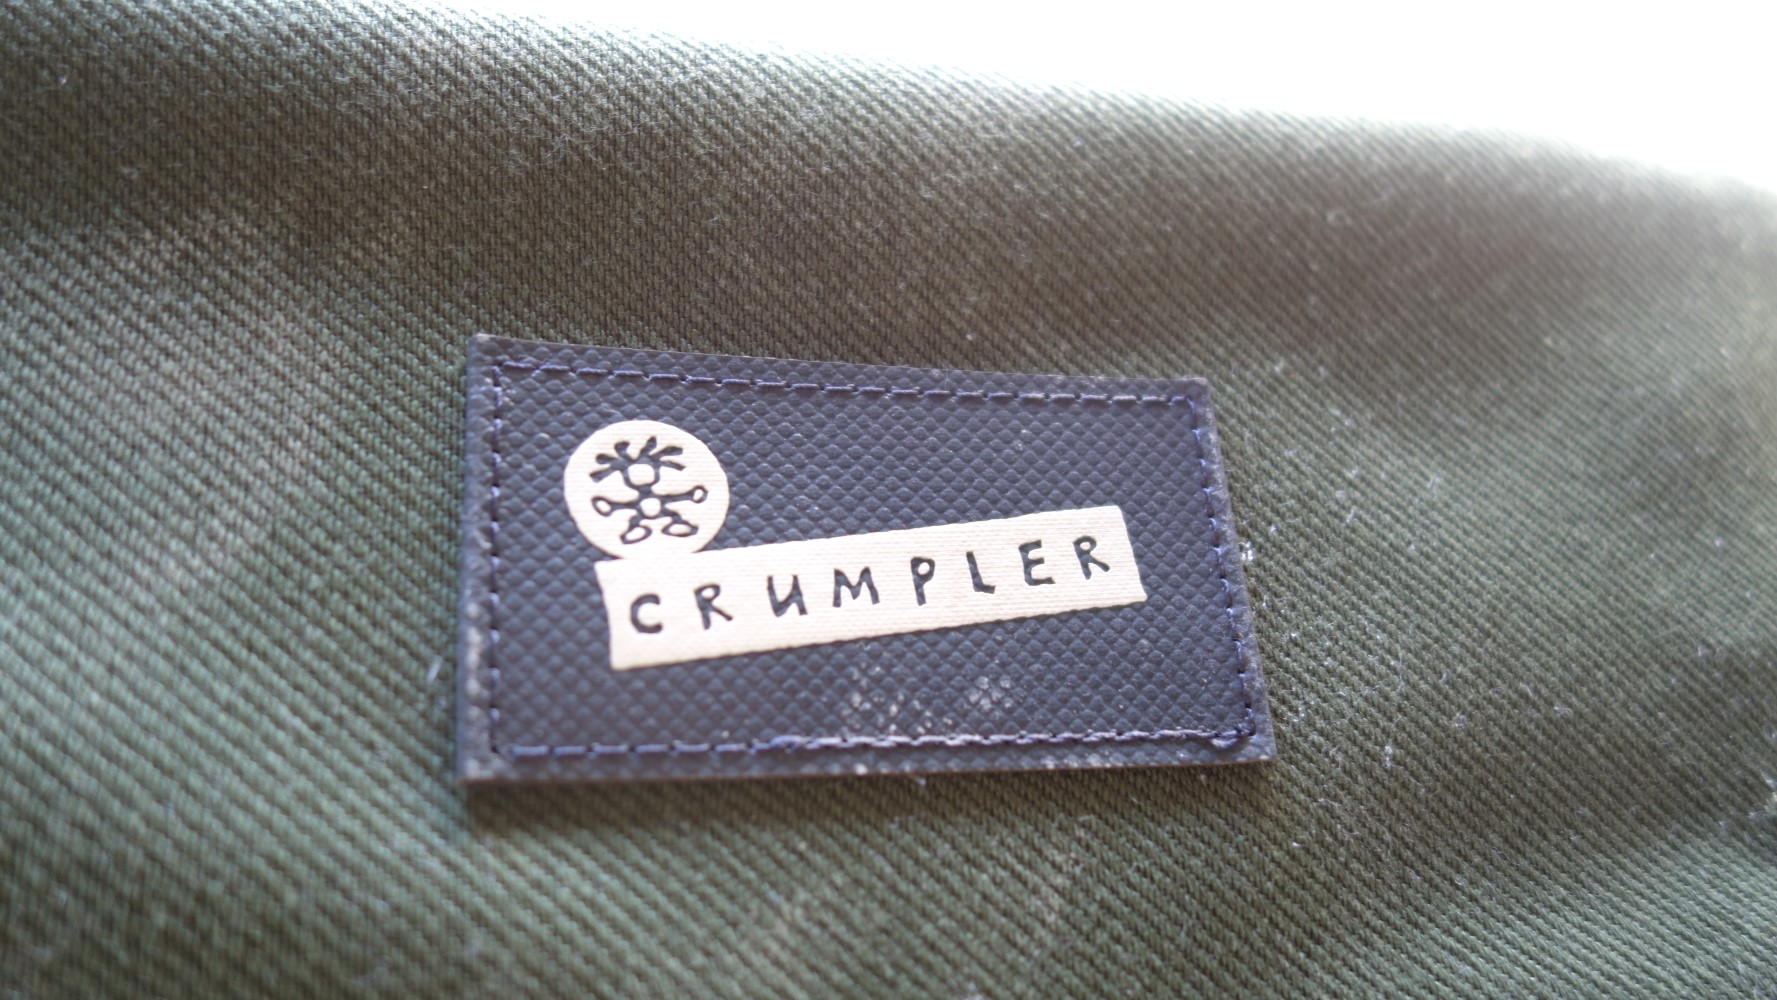 crumpler kashgar outpost logo (Custom)